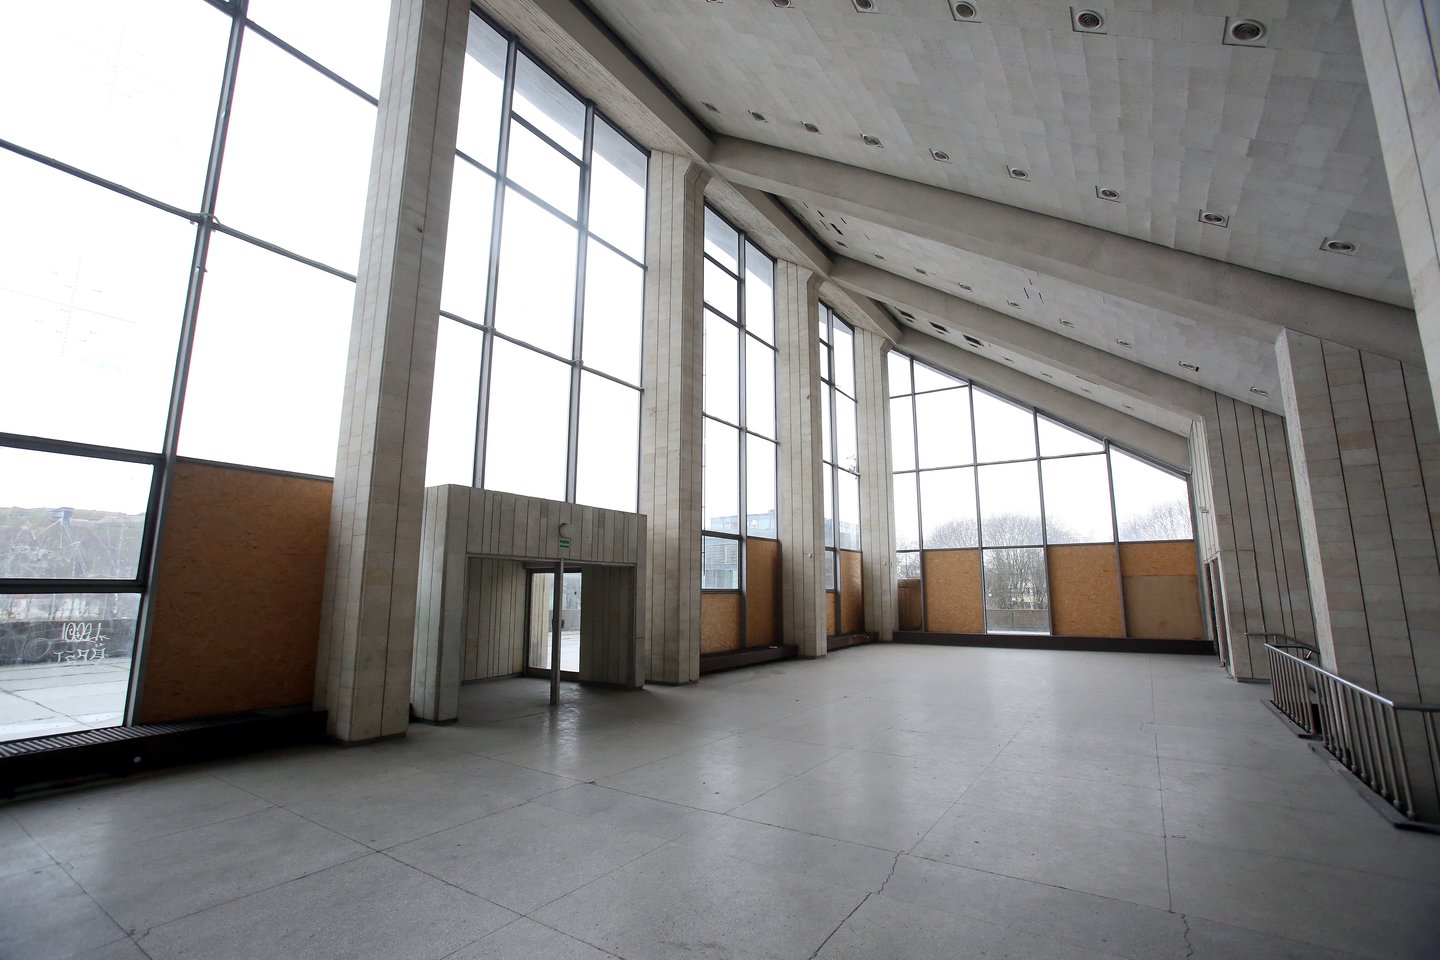 Sporto rūmai,sporto rūmų vidusVilniaus koncertų ir sporto rūmų rekonstrukcijos istorija, prasidėjusi 2008-aisiais, vis dar be pabaigos.<br>R.Danisevičiaus nuotr.